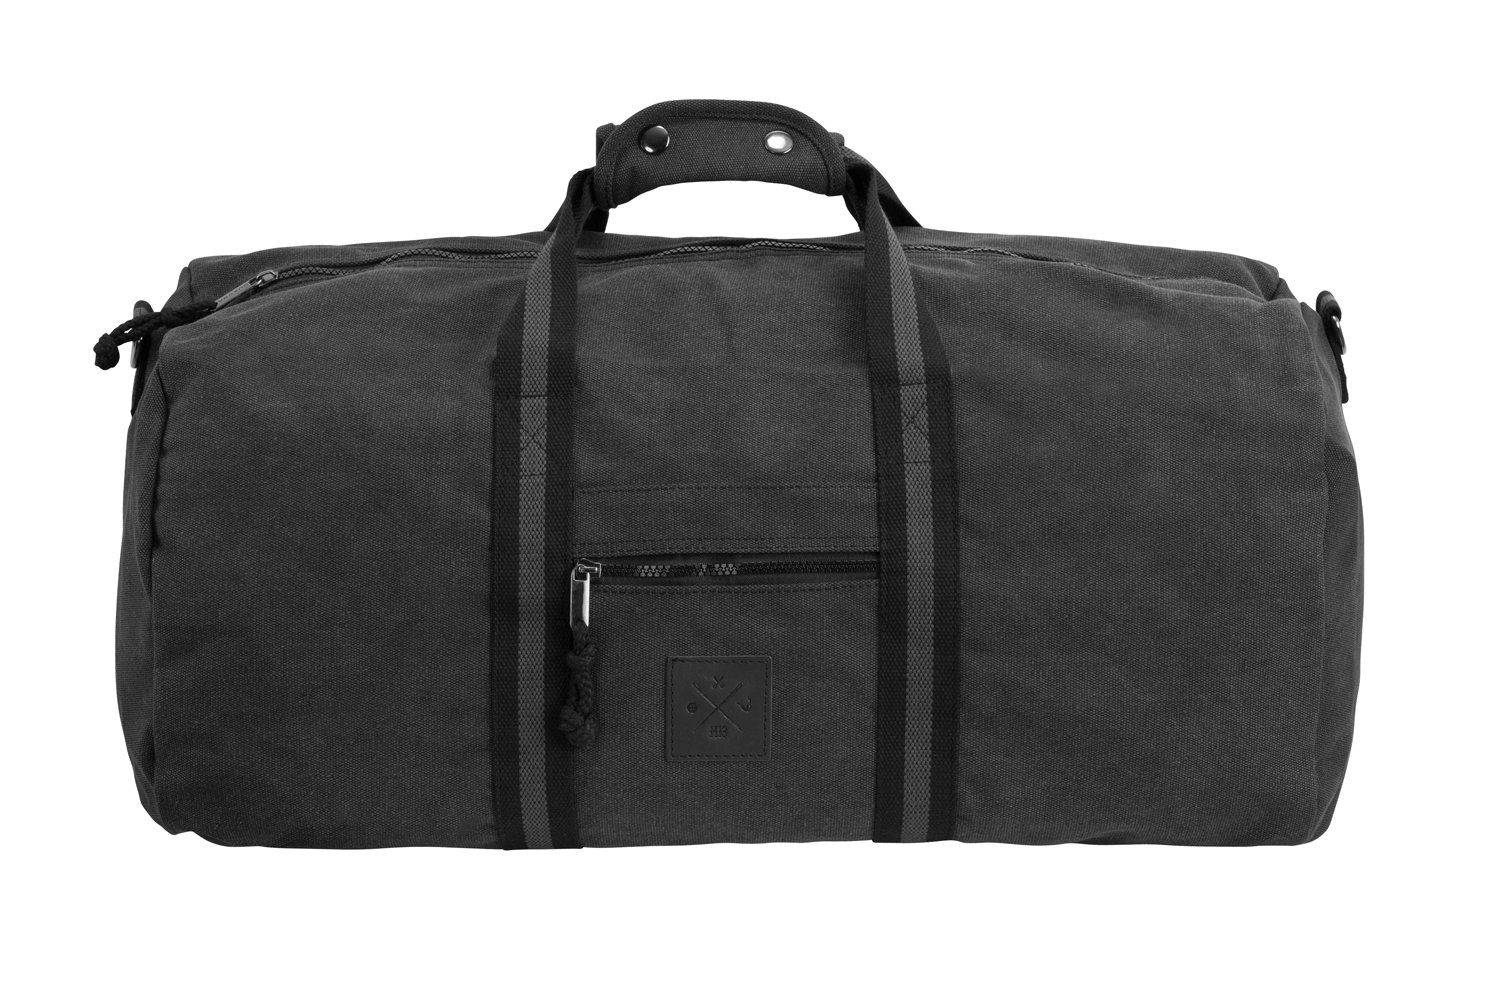 45L Canvas Sporttasche, Manufaktur13 Matter Bag, - Bag Reisetasche, Duffel Barrel Grey Sporttasche Fassungsvermögen